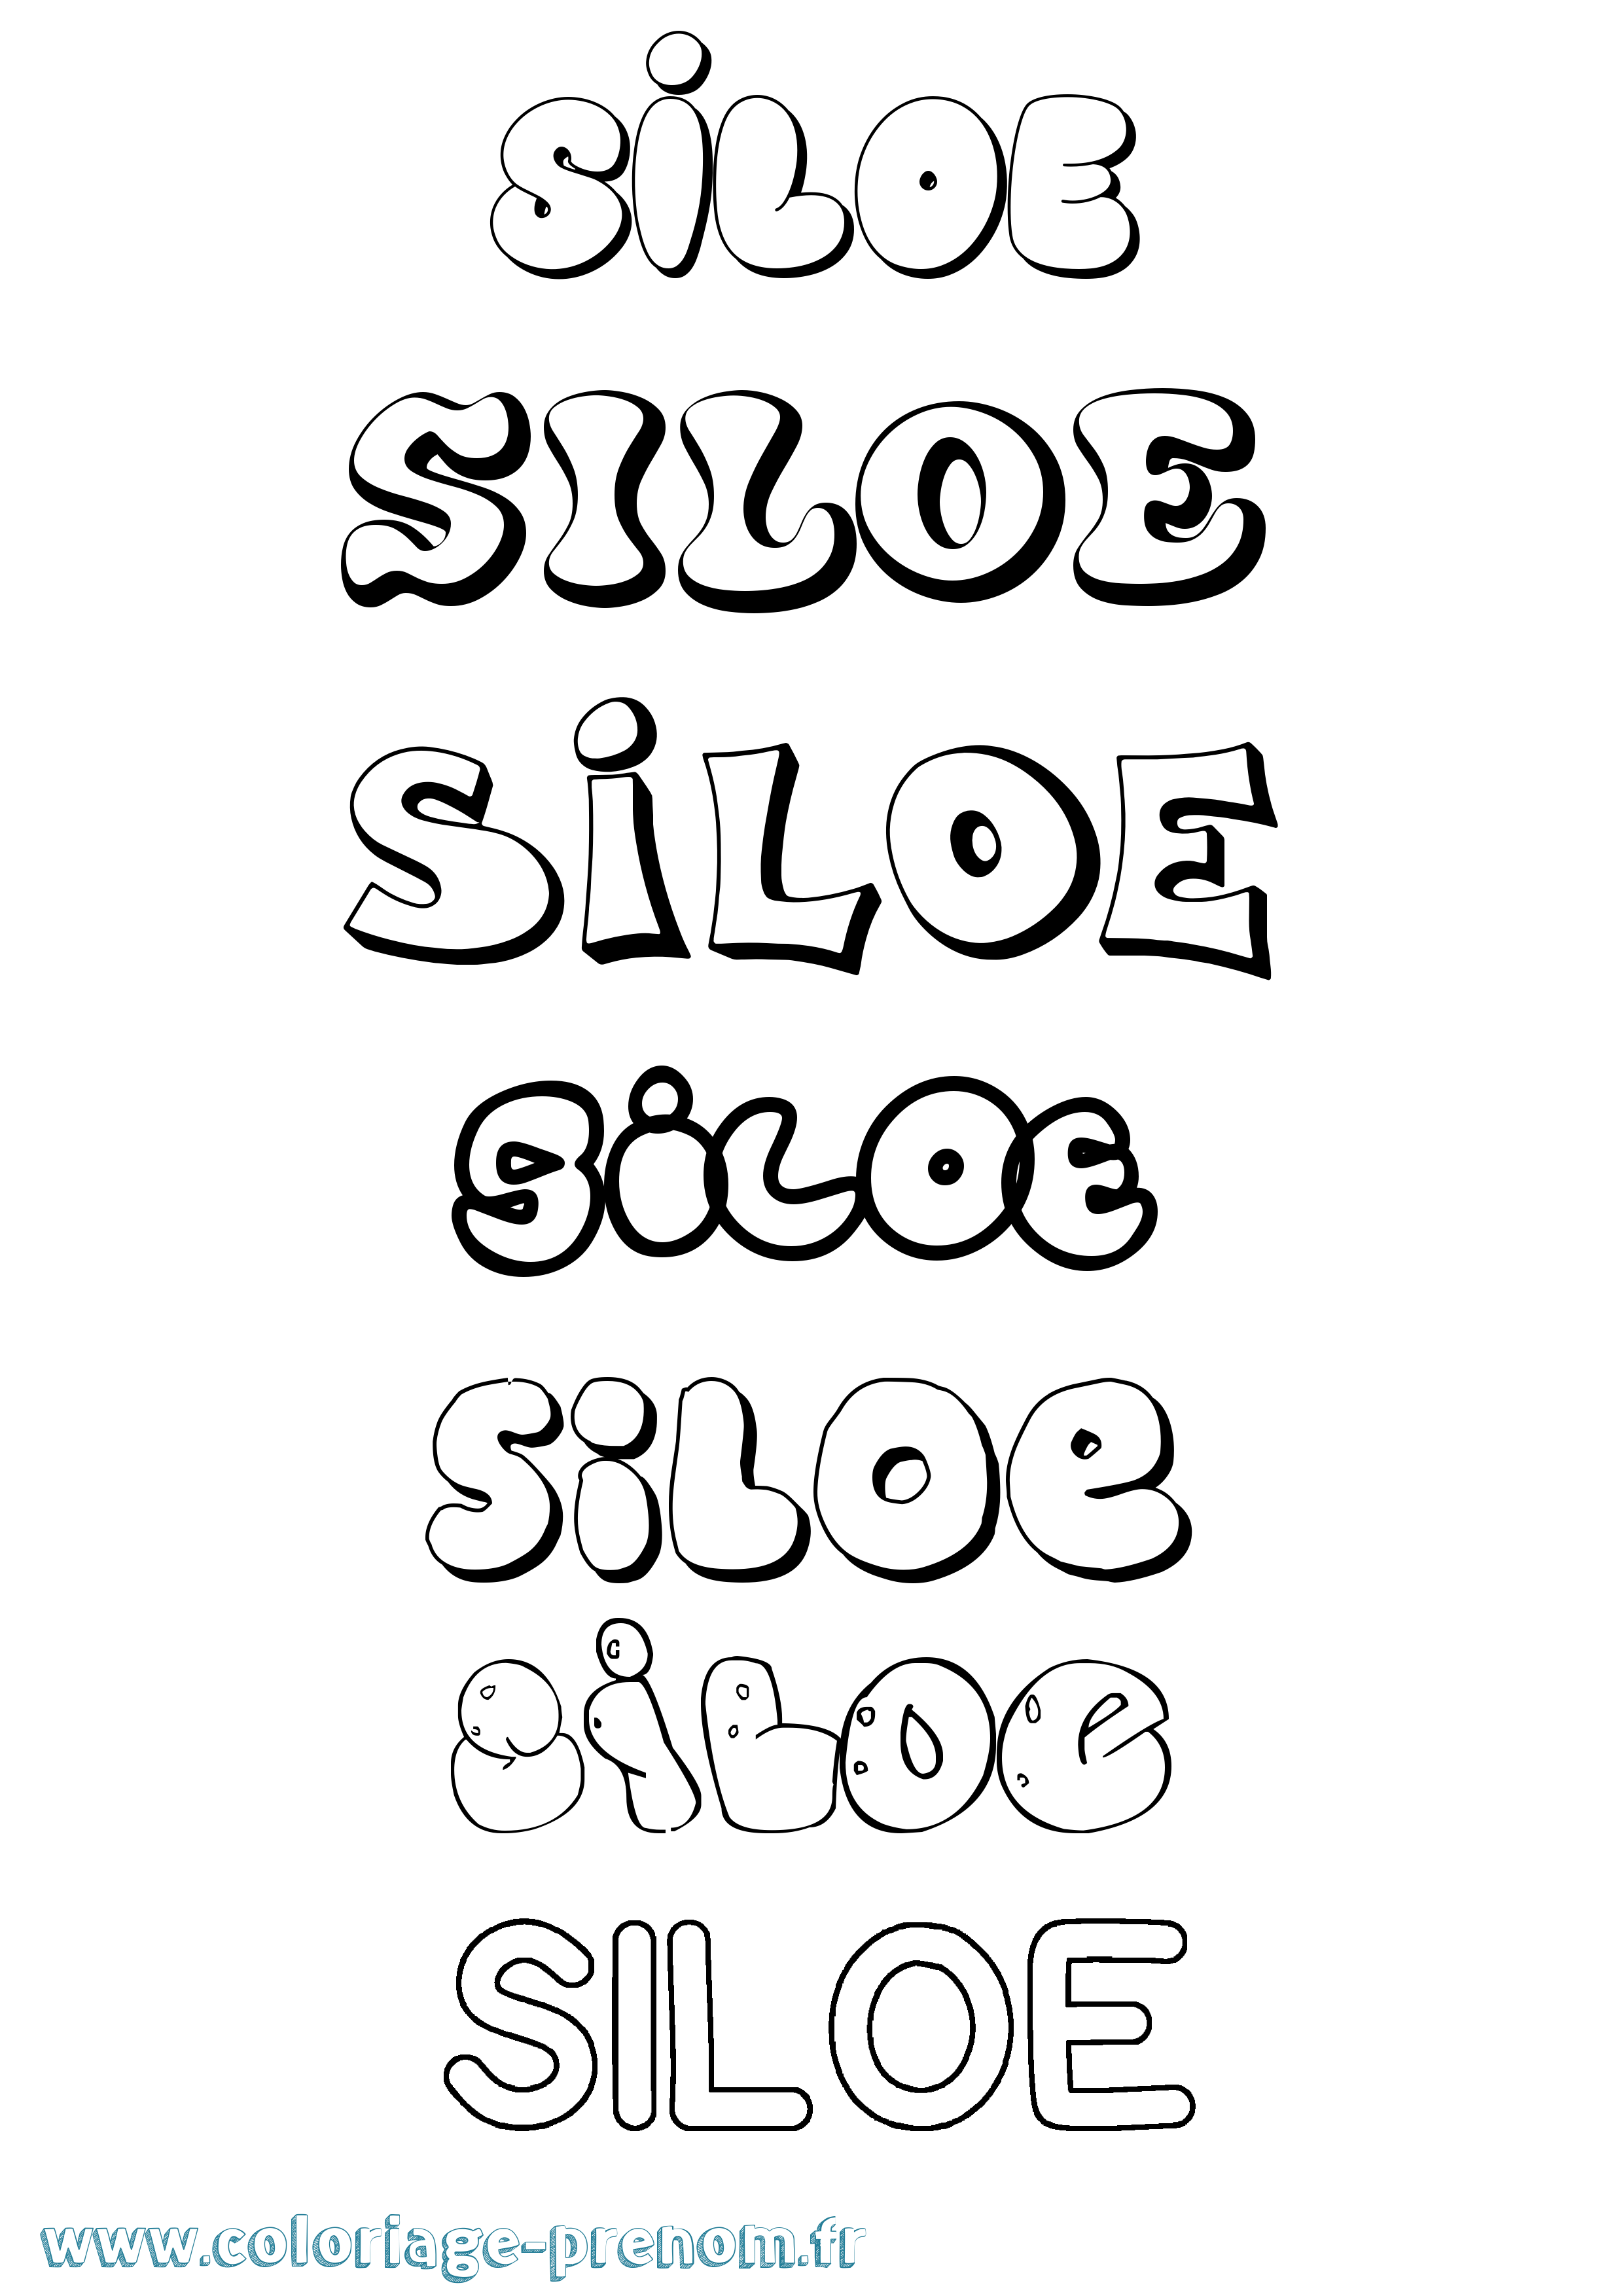 Coloriage prénom Siloe